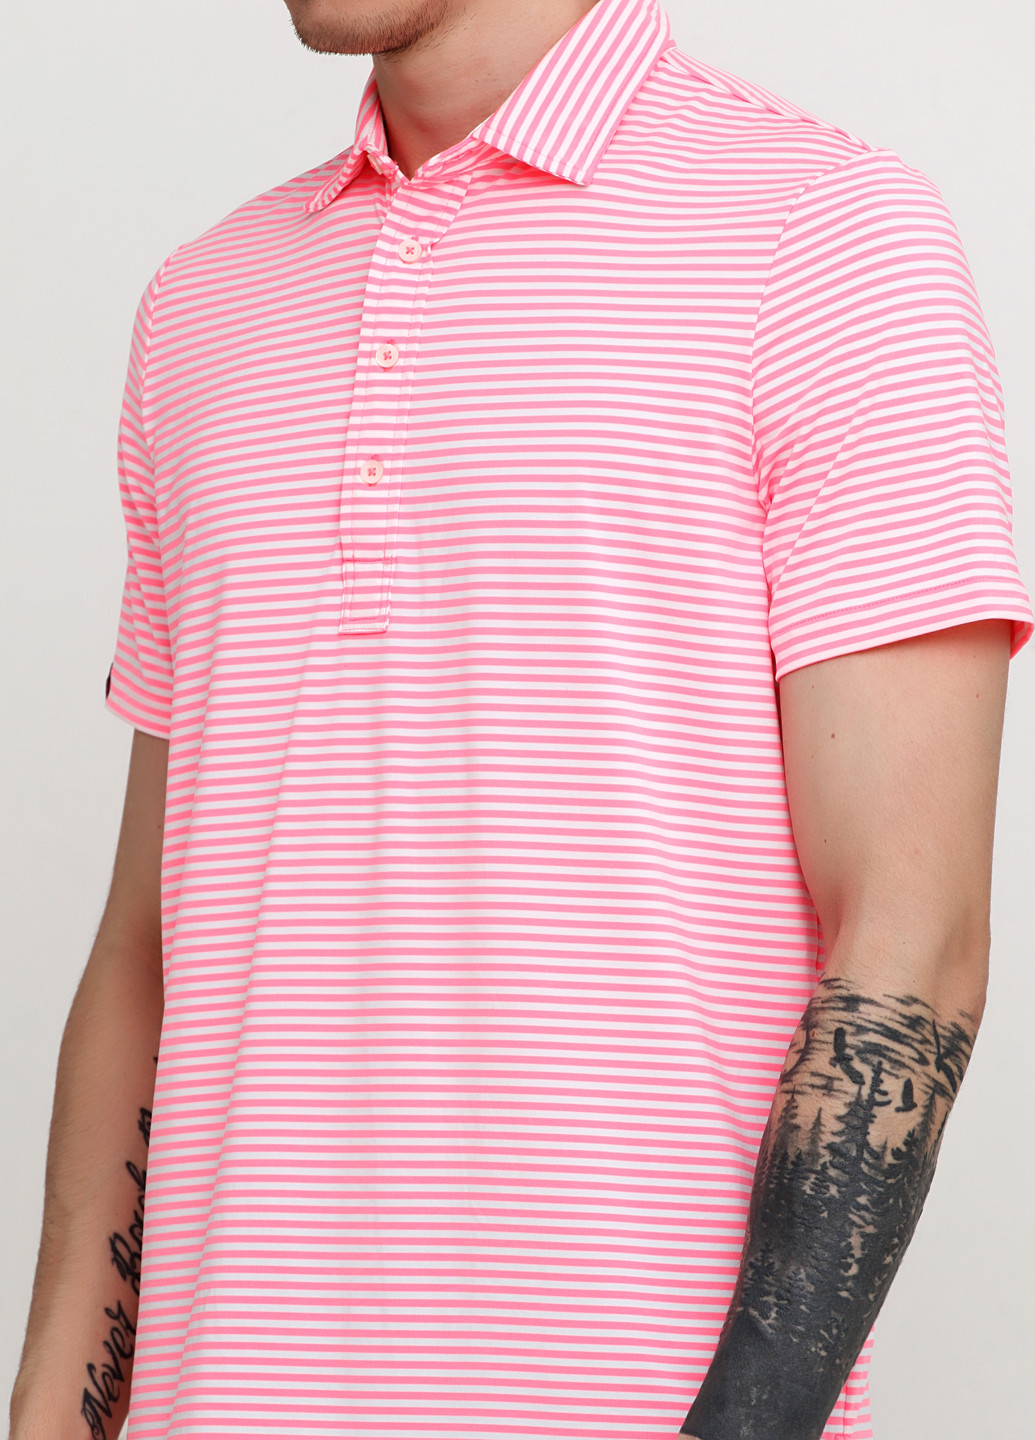 Кислотно-розовая футболка-поло для мужчин Ralph Lauren в полоску